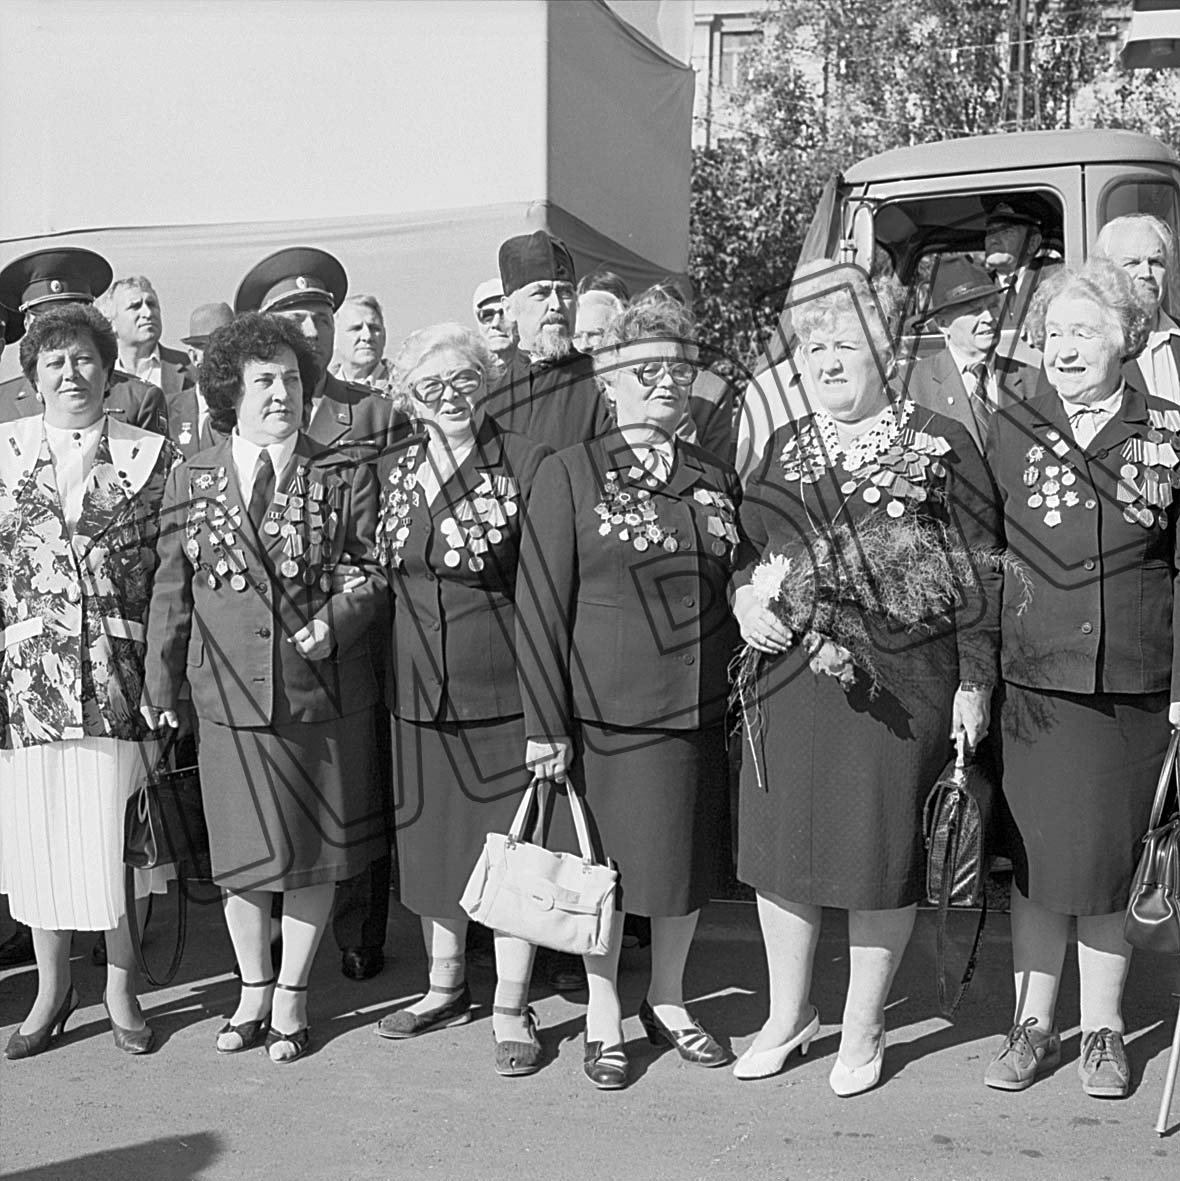 Fotografie: Veteraninnen des Zweiten Weltkriegs begrüßen die Soldaten der Berlin-Brigade, Kursk, 4./5. September 1994 (Museum Berlin-Karlshorst RR-P)